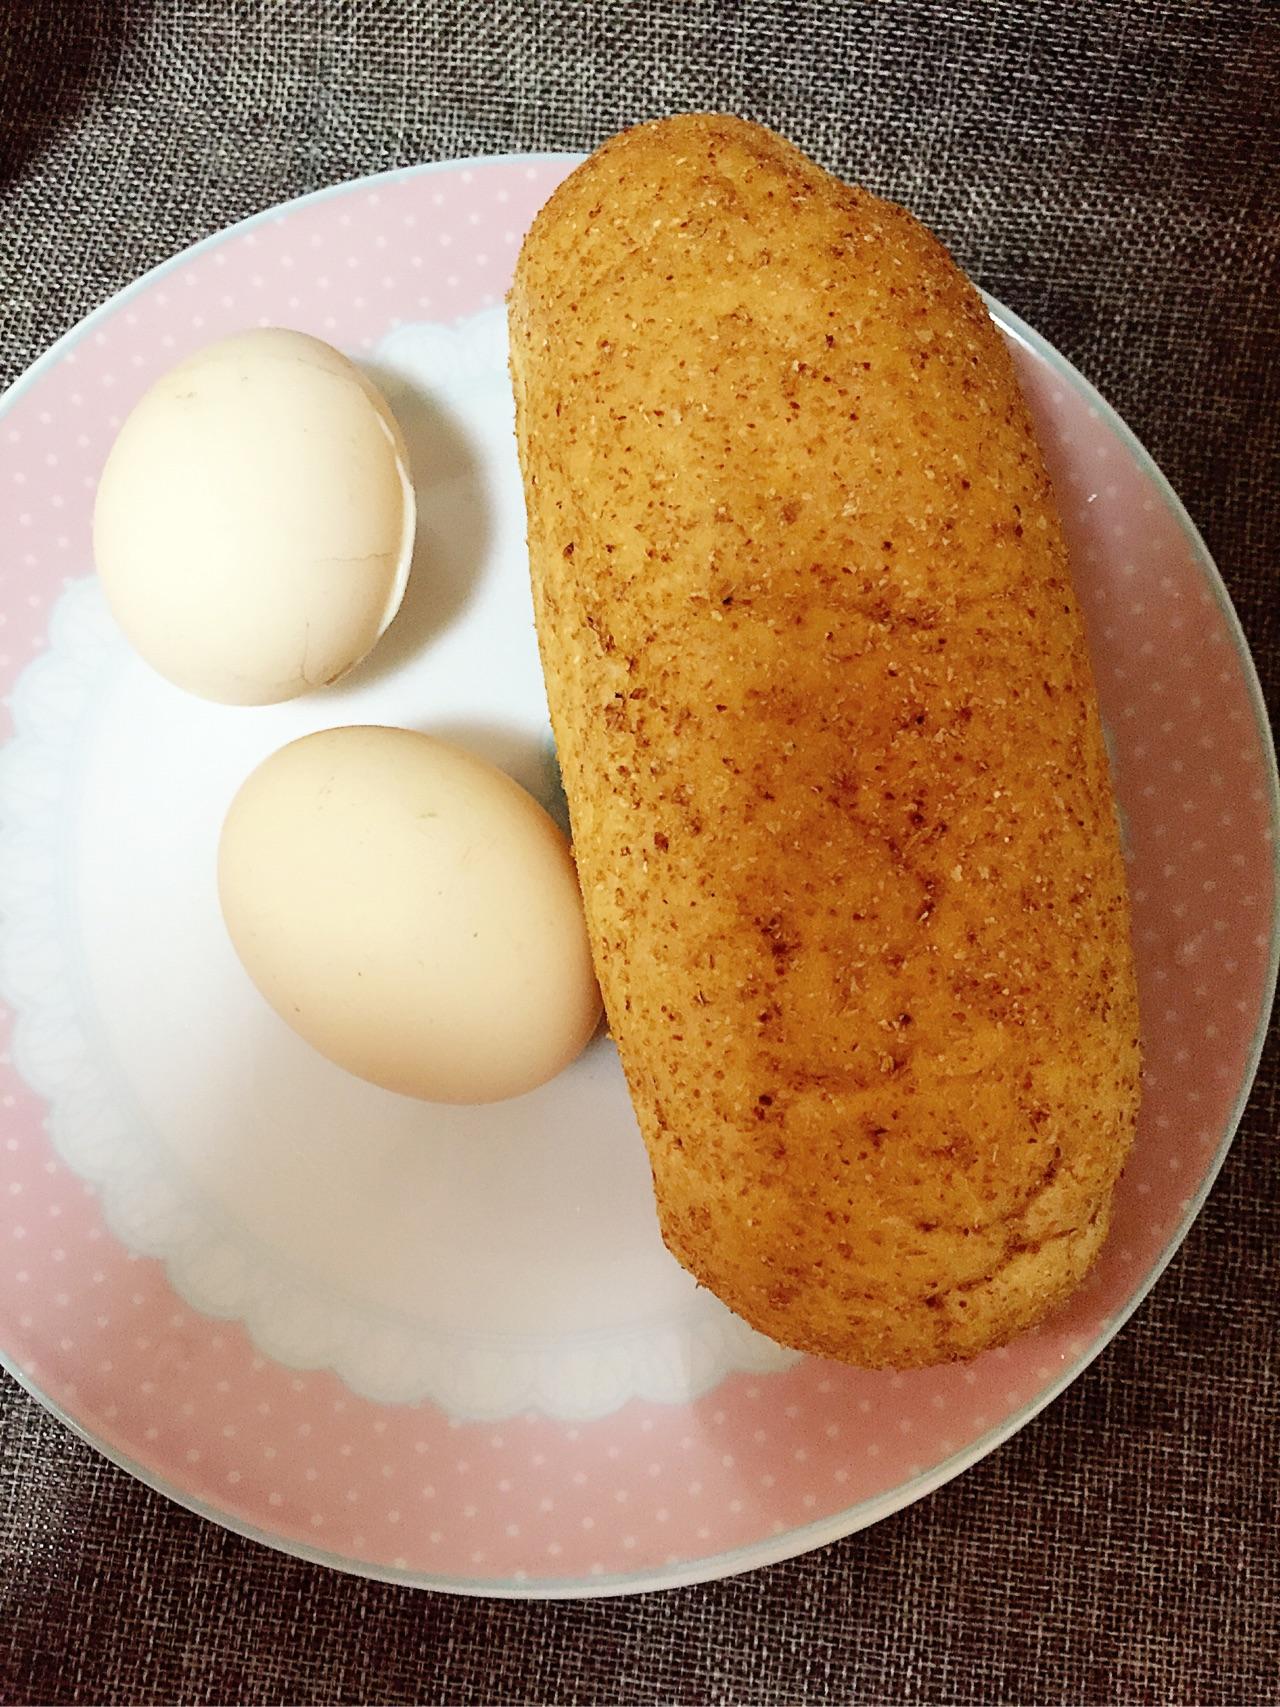 火腿鸡蛋炒饭,火腿鸡蛋炒饭的家常做法 - 美食杰火腿鸡蛋炒饭做法大全